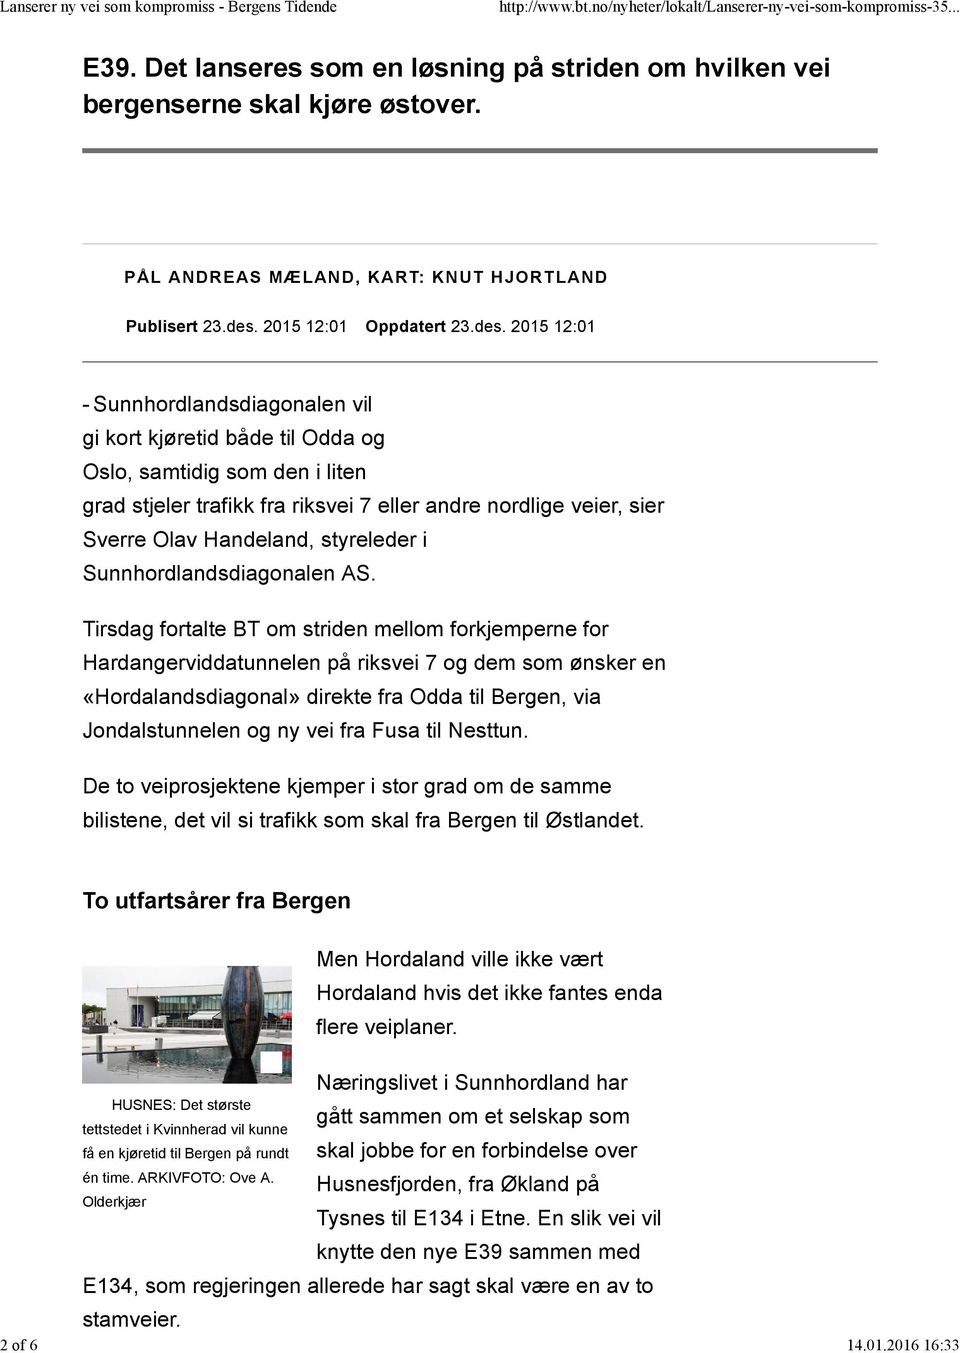 2015 12:01 - Sunnhordlandsdiagonalen vil gi kort kjøretid både til Odda og Oslo, samtidig som den i liten grad stjeler trafikk fra riksvei 7 eller andre nordlige veier, sier Sverre Olav Handeland,